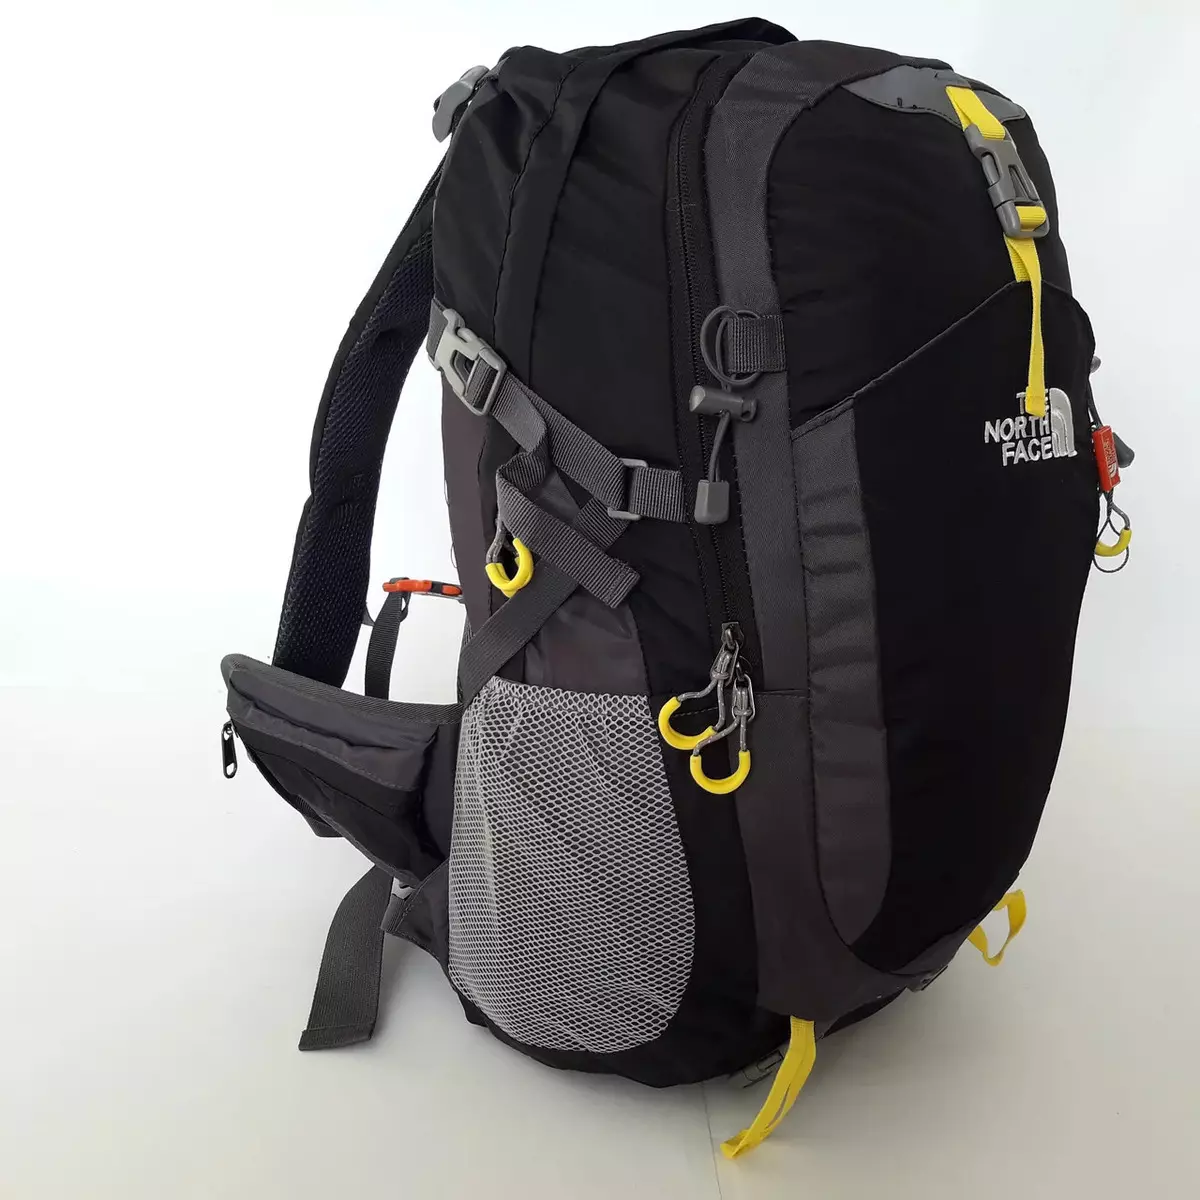 Plecaki północnej twarzy: plecaki-torby i plecaki miejskie, żółte i czarne modele, zielony i niebieski, czerwony i inny 15407_5